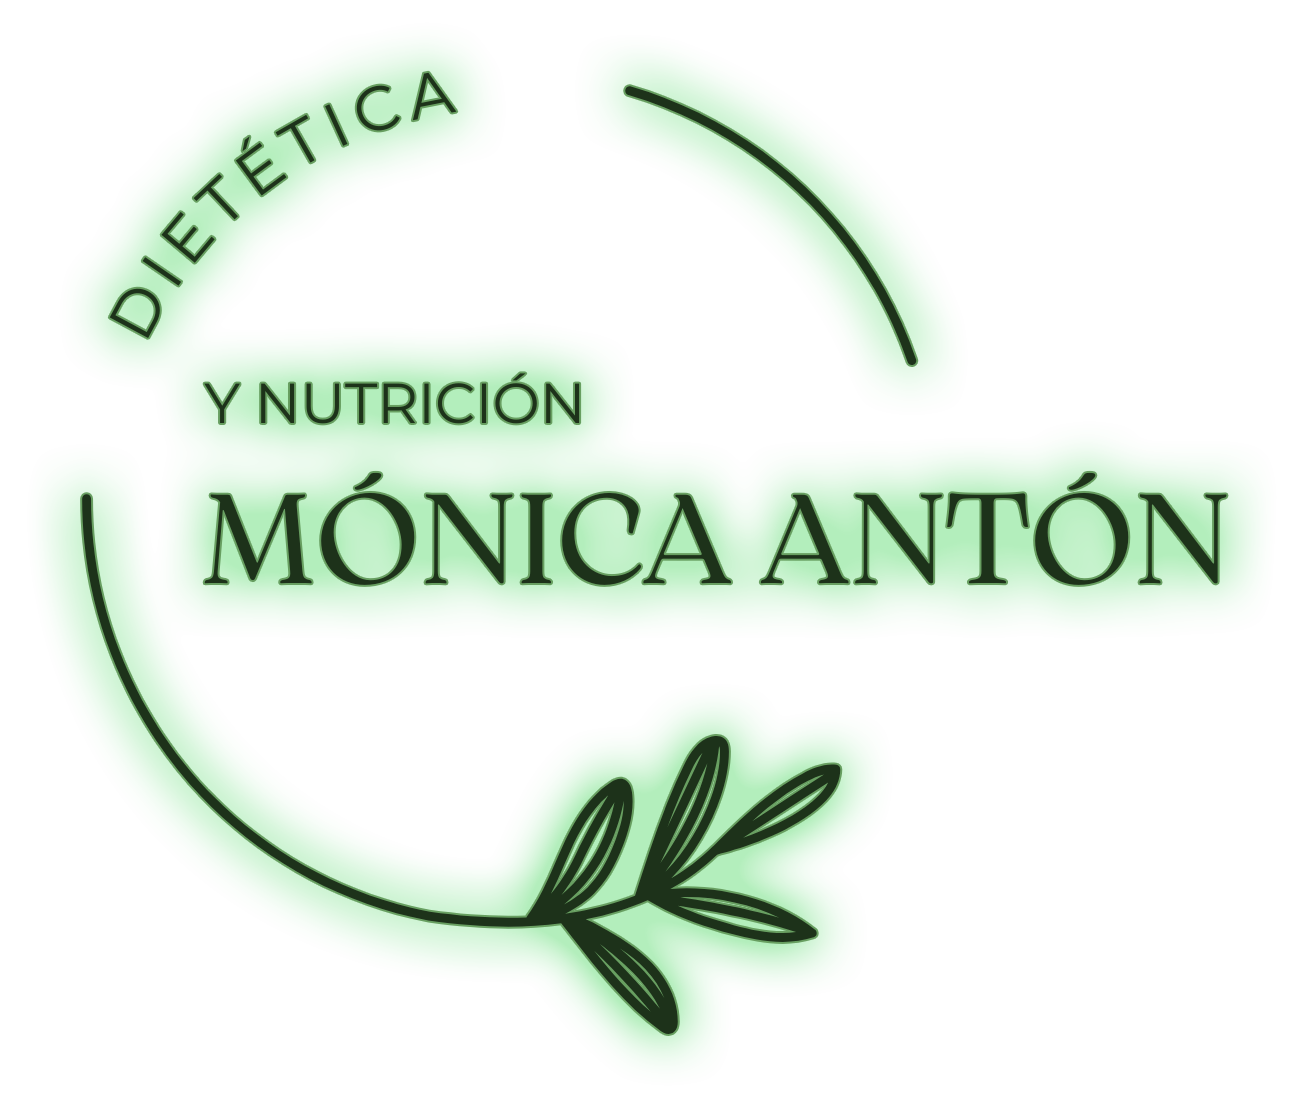 Monica Anton